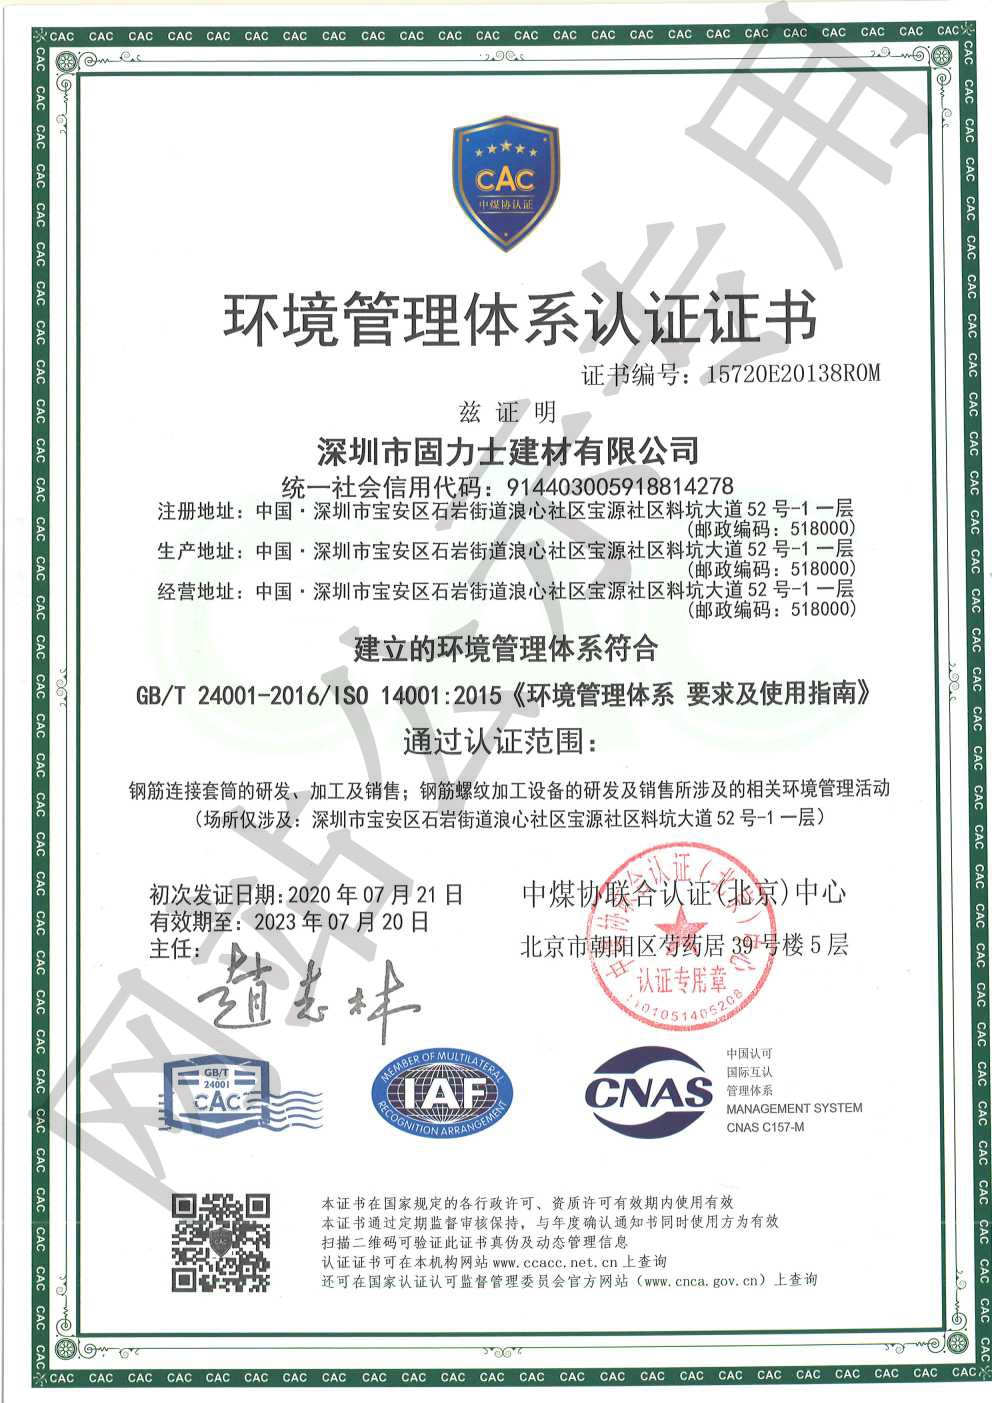 庄浪ISO14001证书